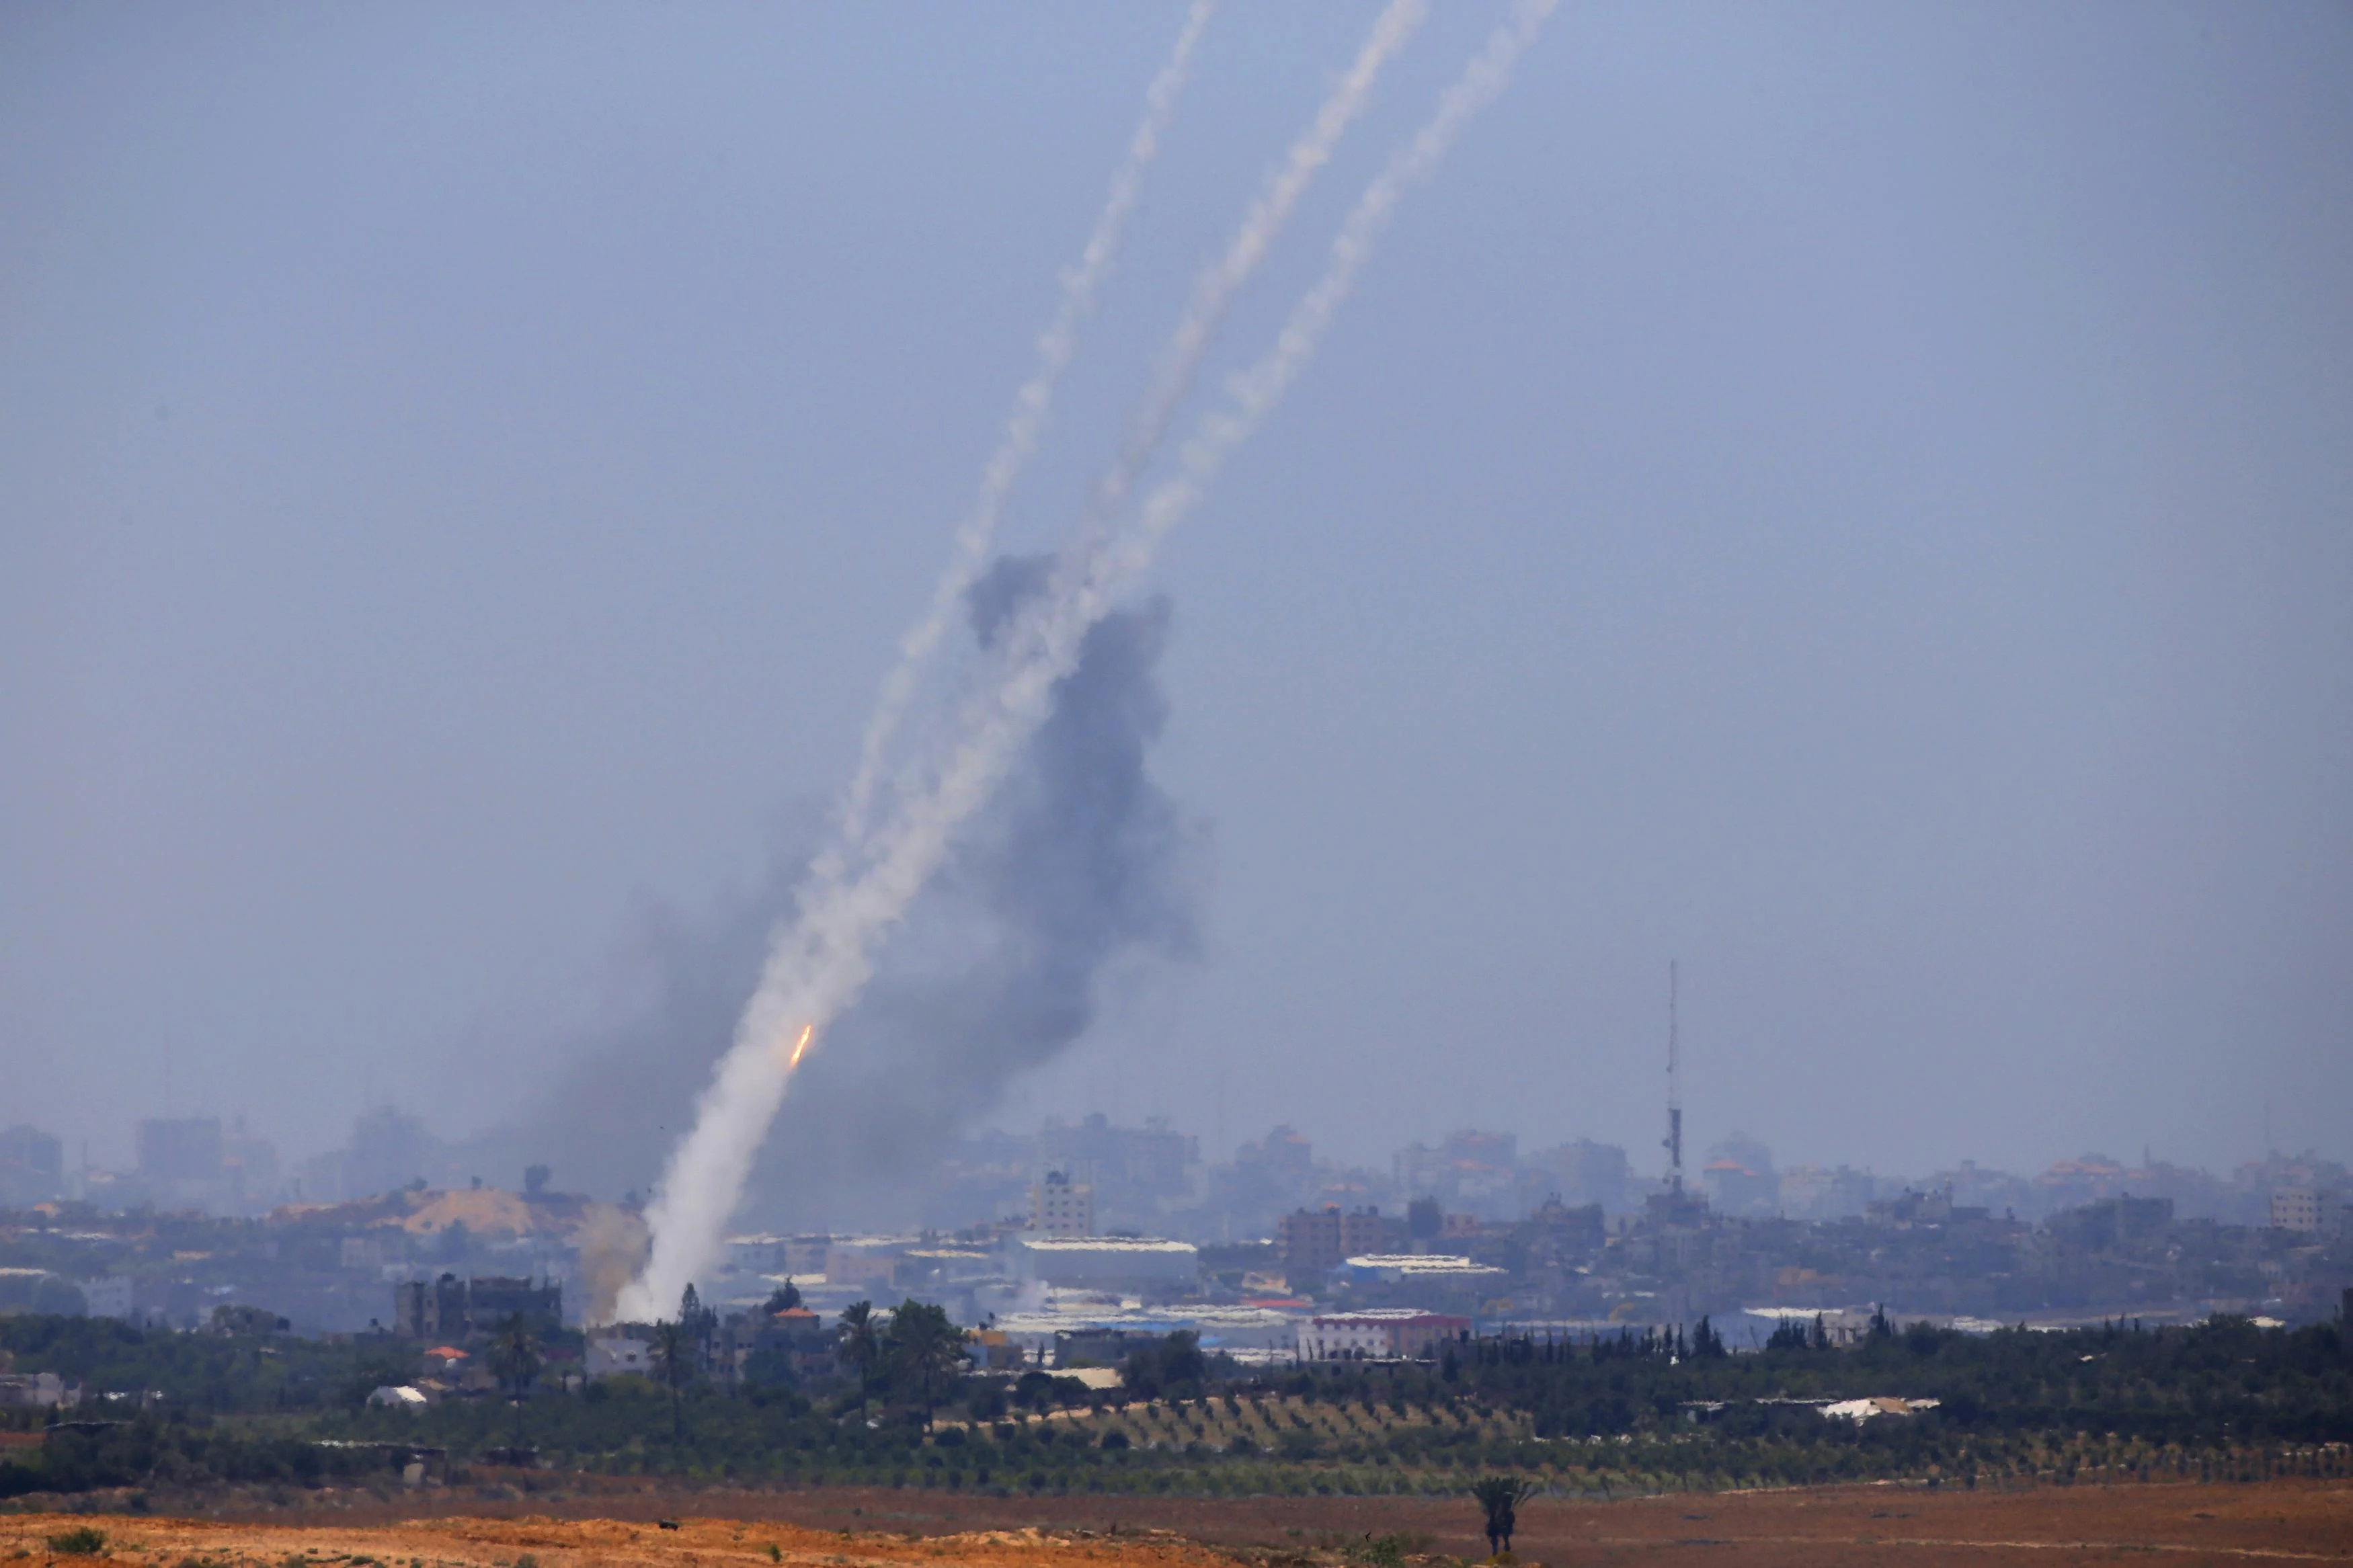 "ישראל מוקפת באיומים ביטחוניים". ירי רקטות מעזה לעבר ישראל